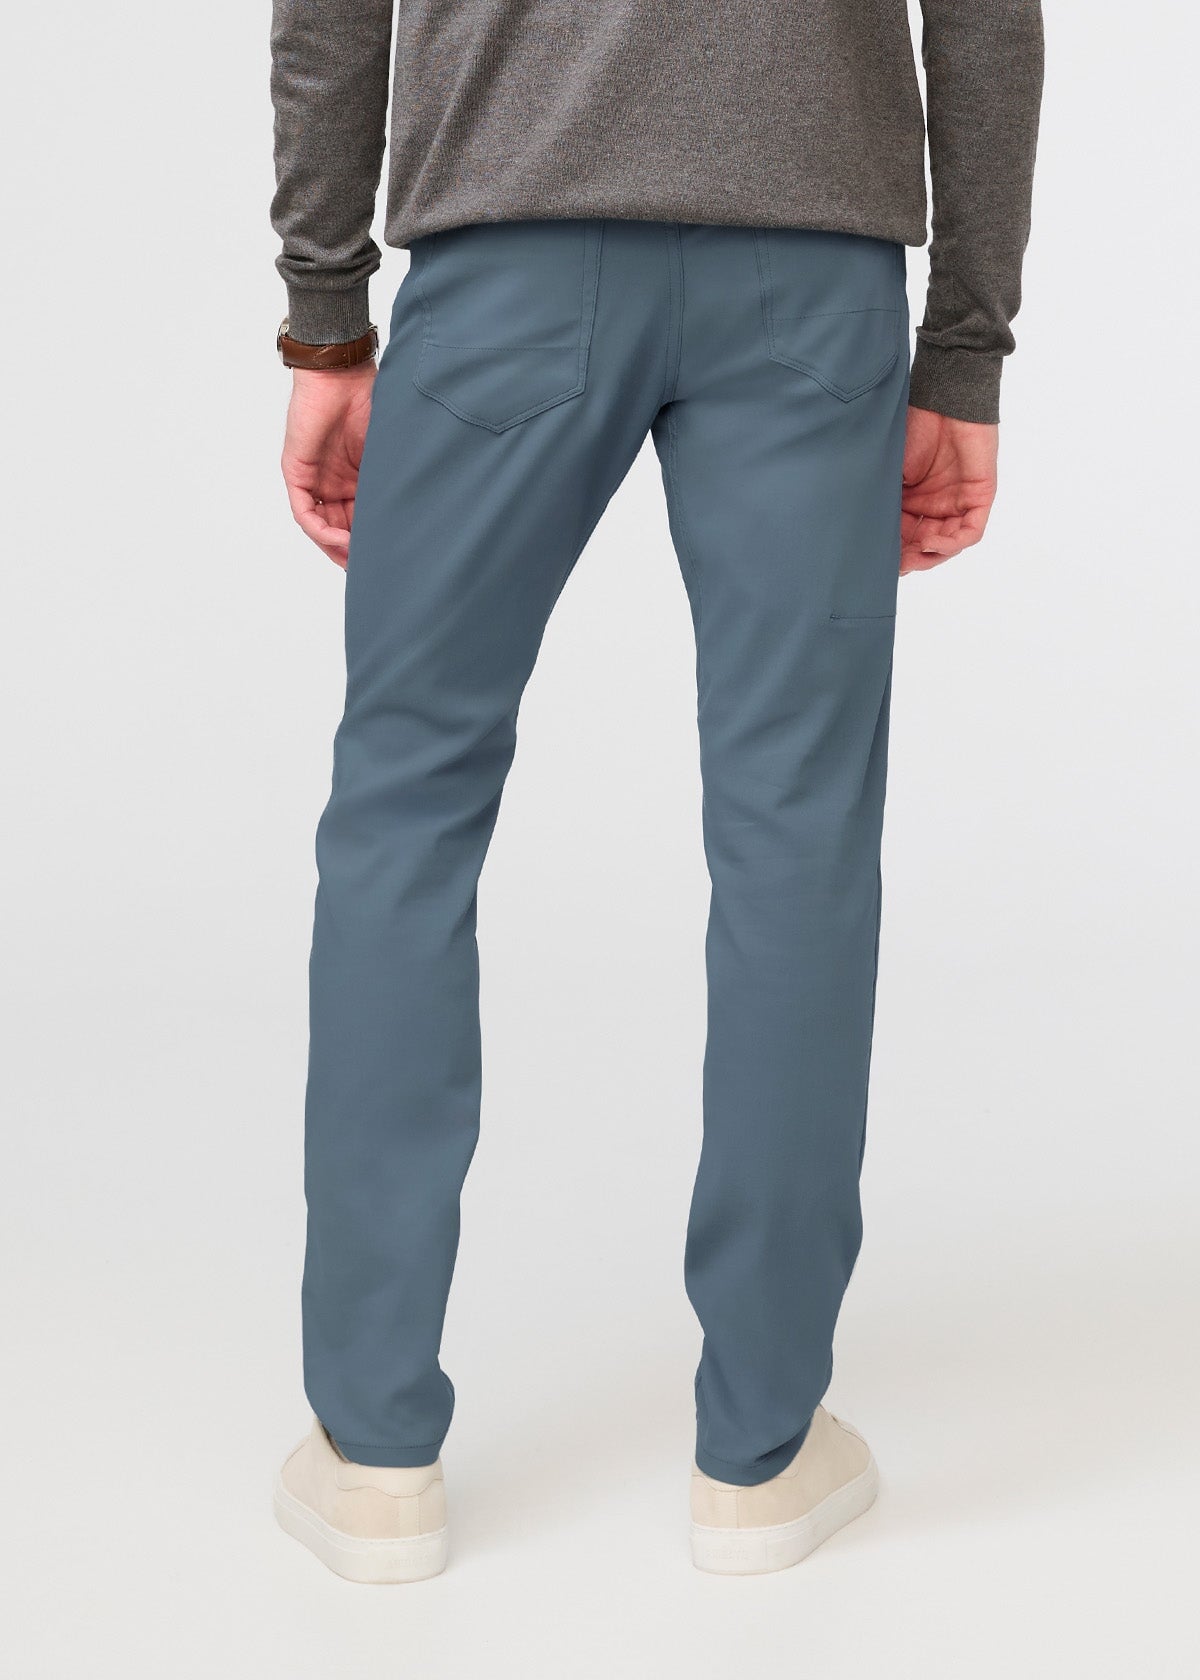 Modern Stretch 5 Pocket Pants - Limestone - Casual Pants - GAZMAN